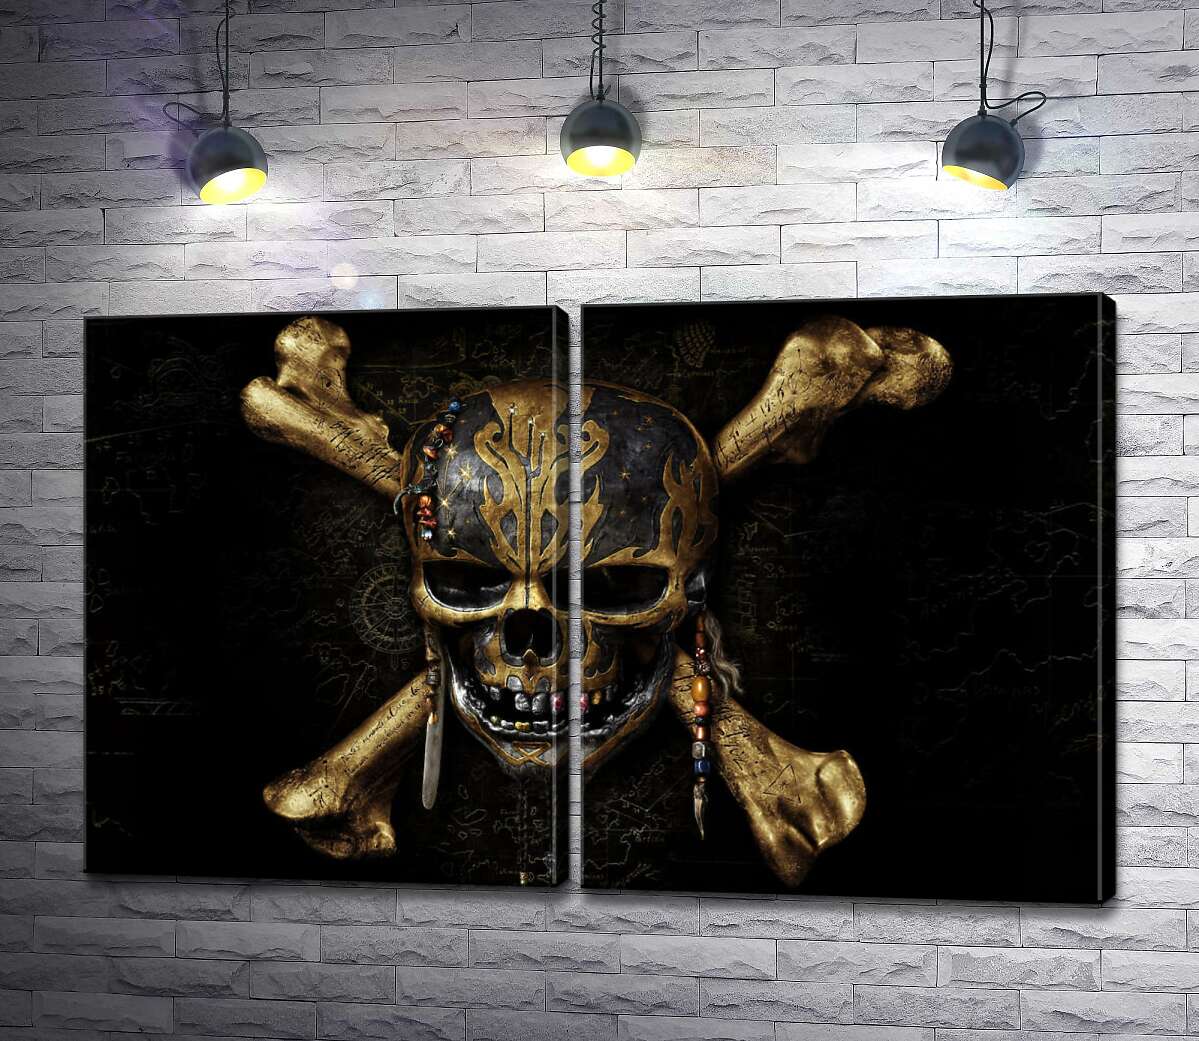 модульная картина Череп пирата на постере к фильму "Пираты Карибского моря: Мертвецы не рассказывают сказки" (Pitates of the Caribbean: Dead Men Tell No Tales)